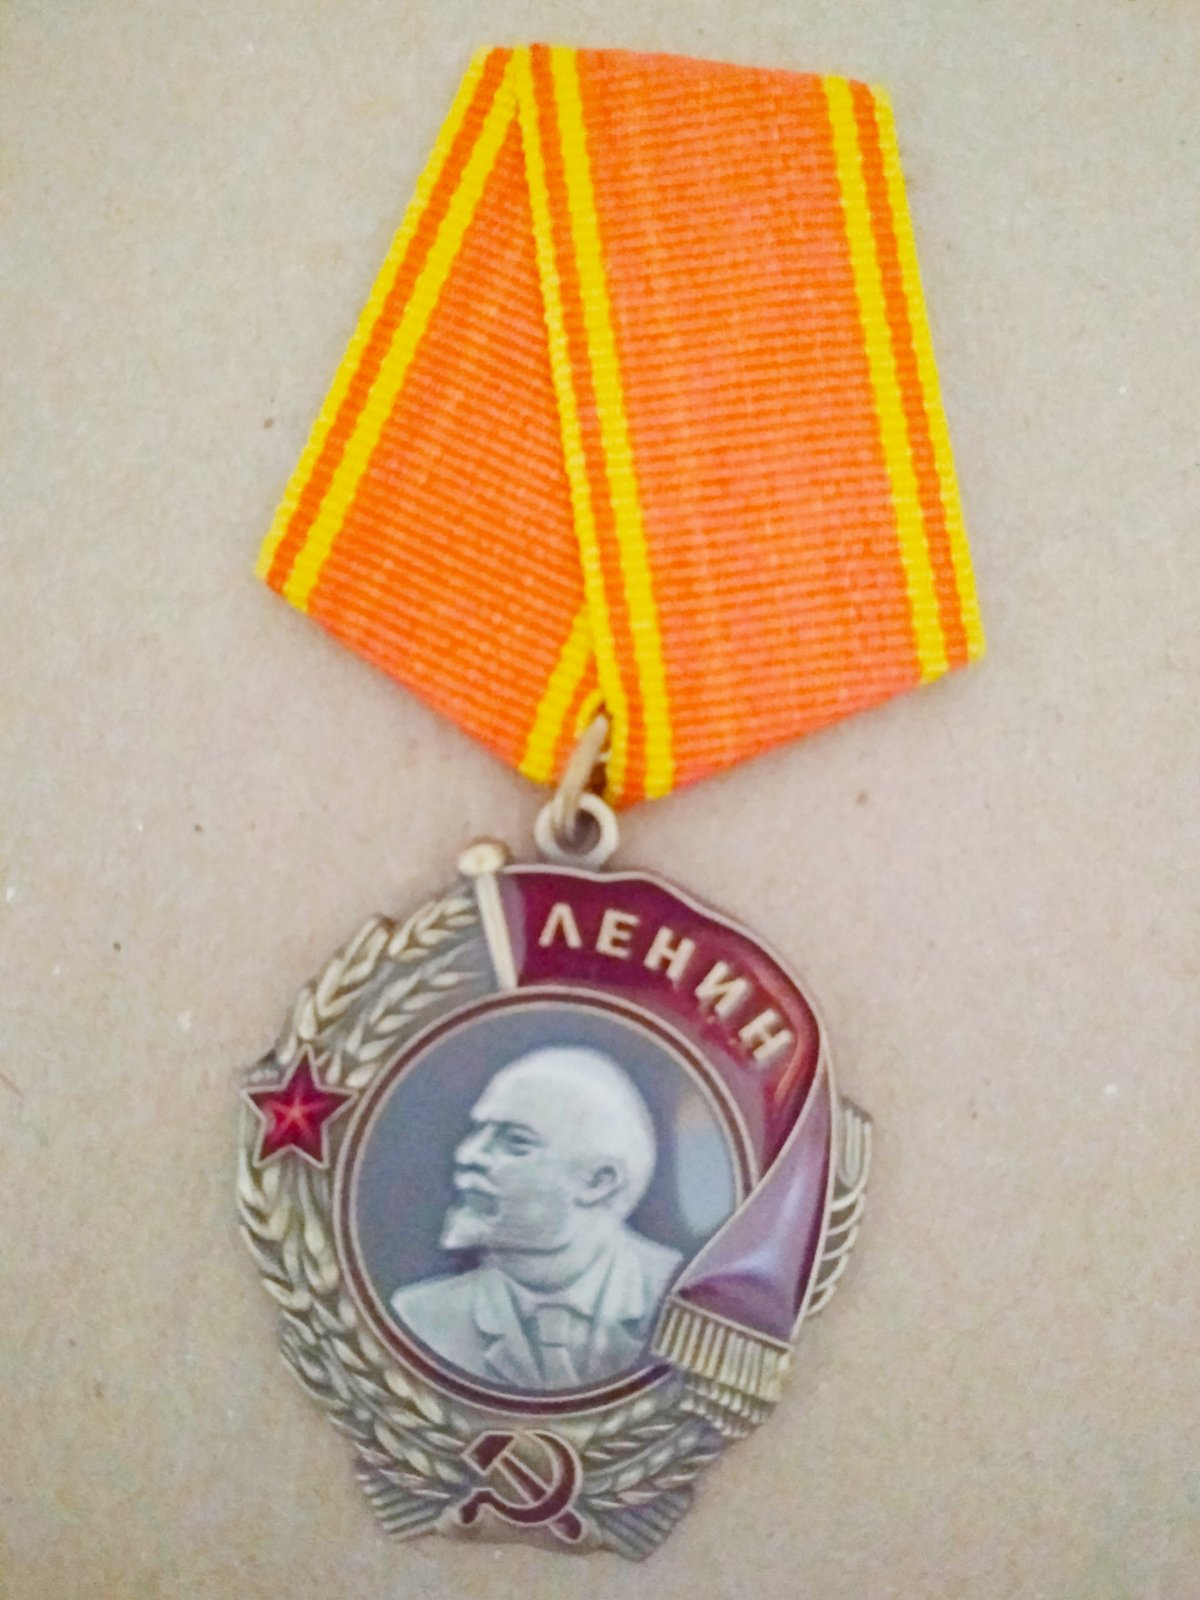 Знак "Орден Ленина"